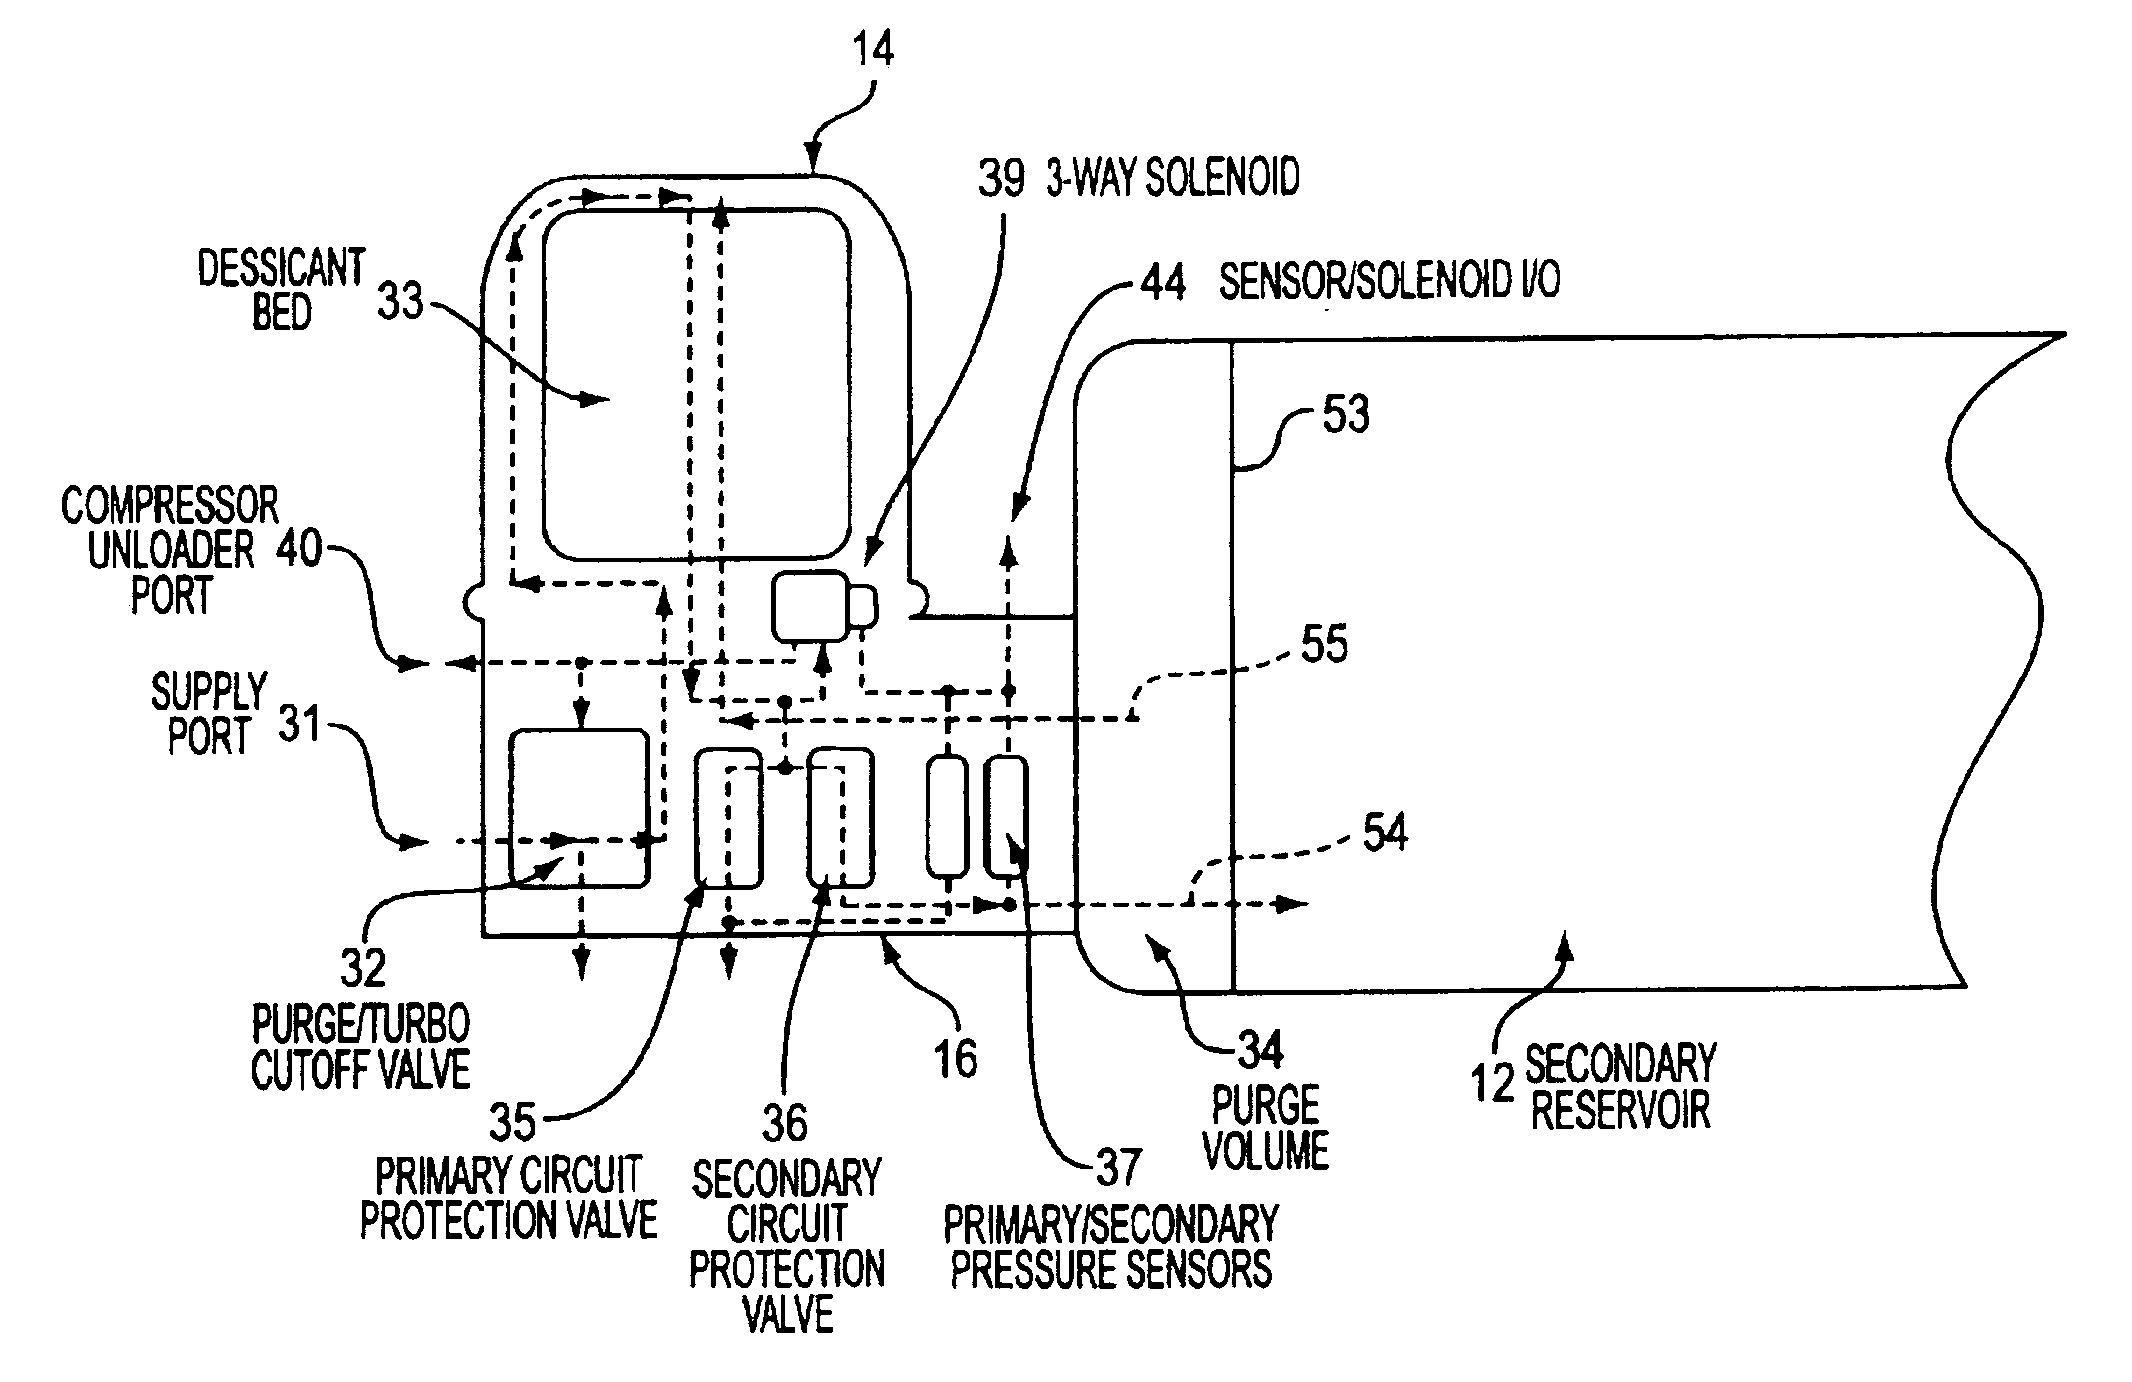 Air dryer reservoir module components